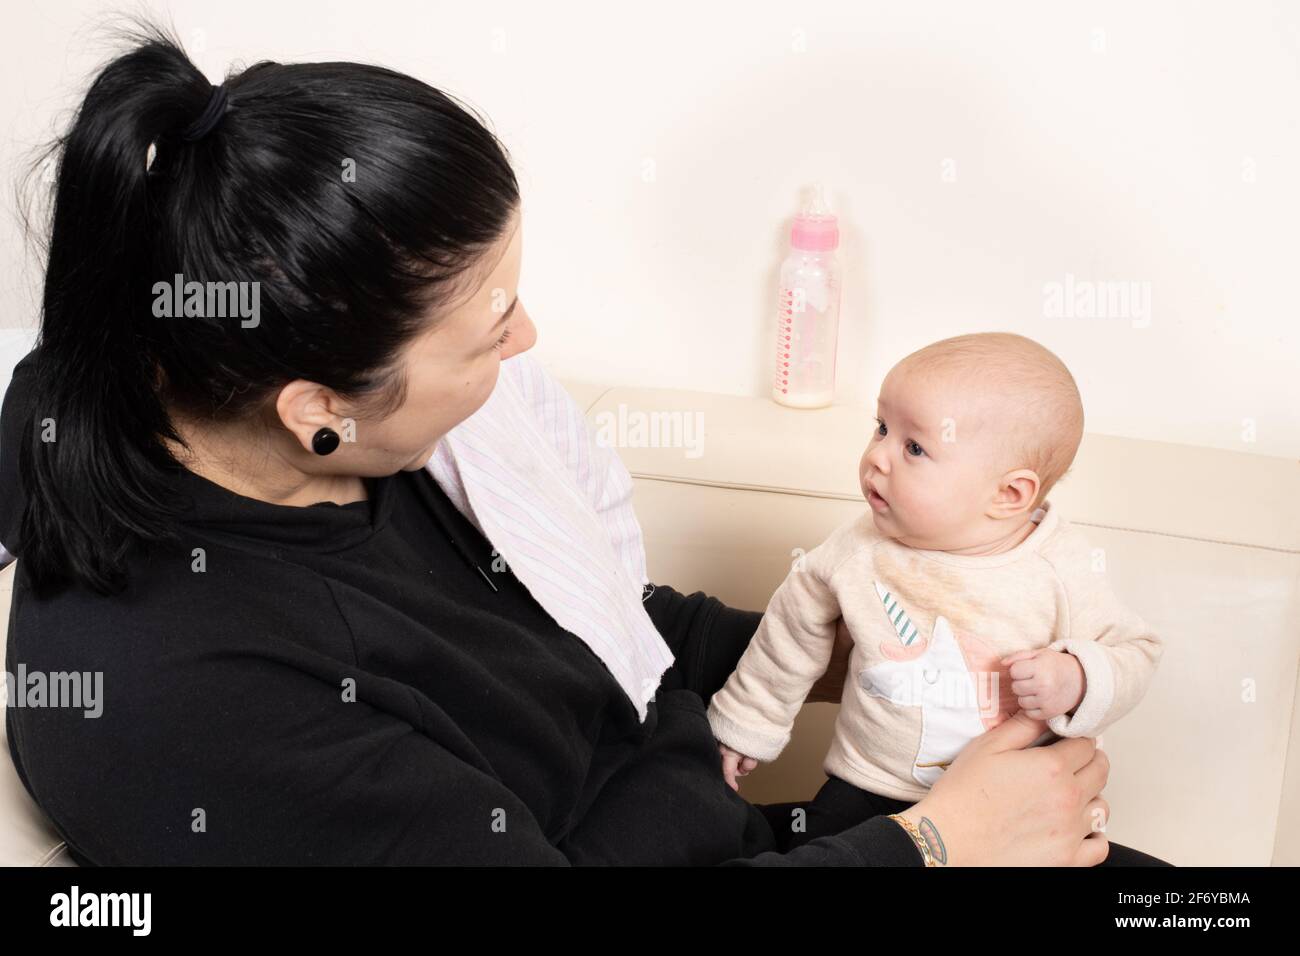 Zwei Monate altes Mädchen, das von der Mutter gehalten wird und sie aufmerksam anschaut, während sie spricht und lächelt Stockfoto